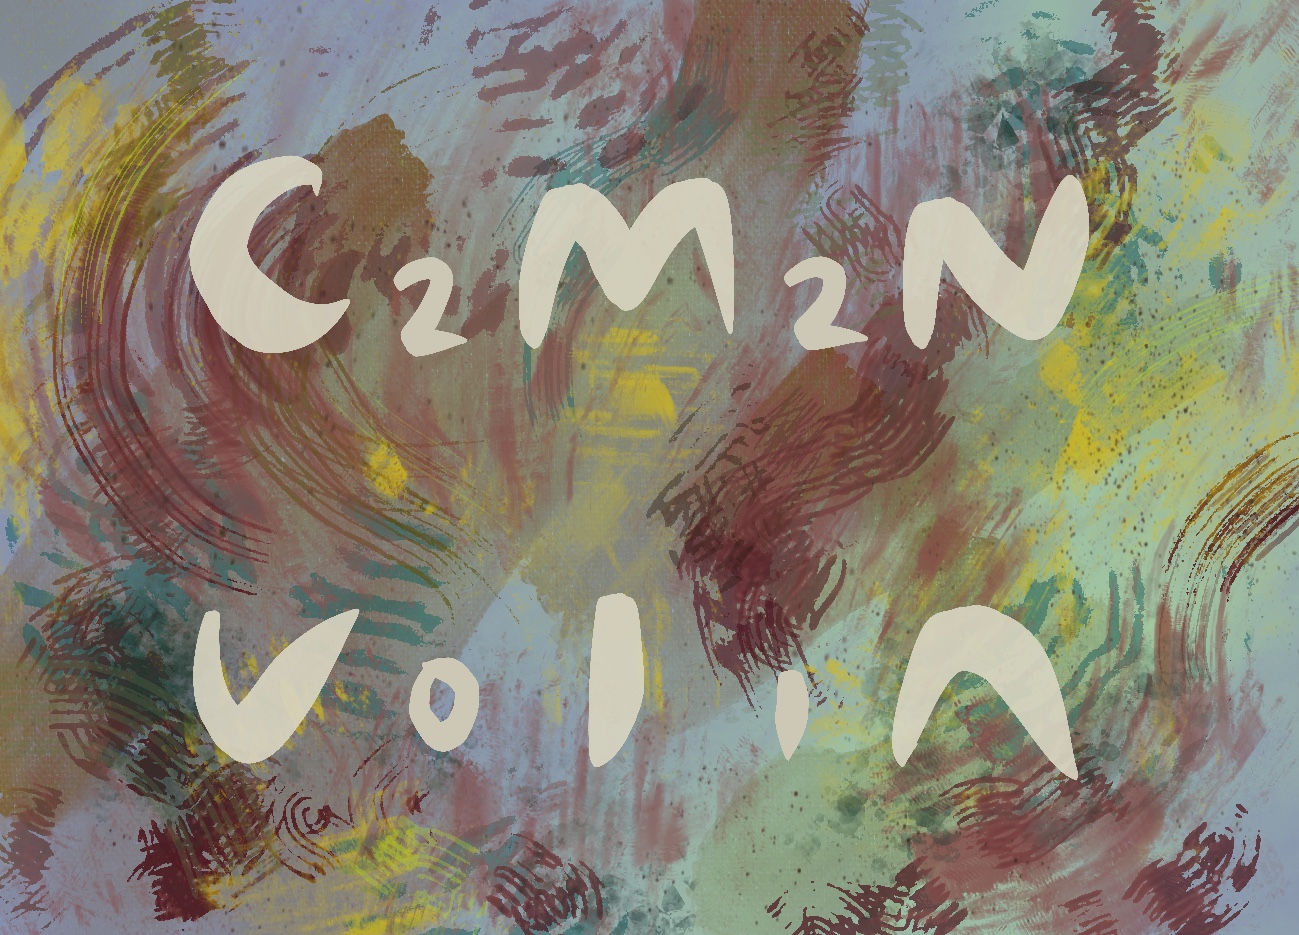 Värikäs logo jonka kirjaimista muodostuu sana Cumina